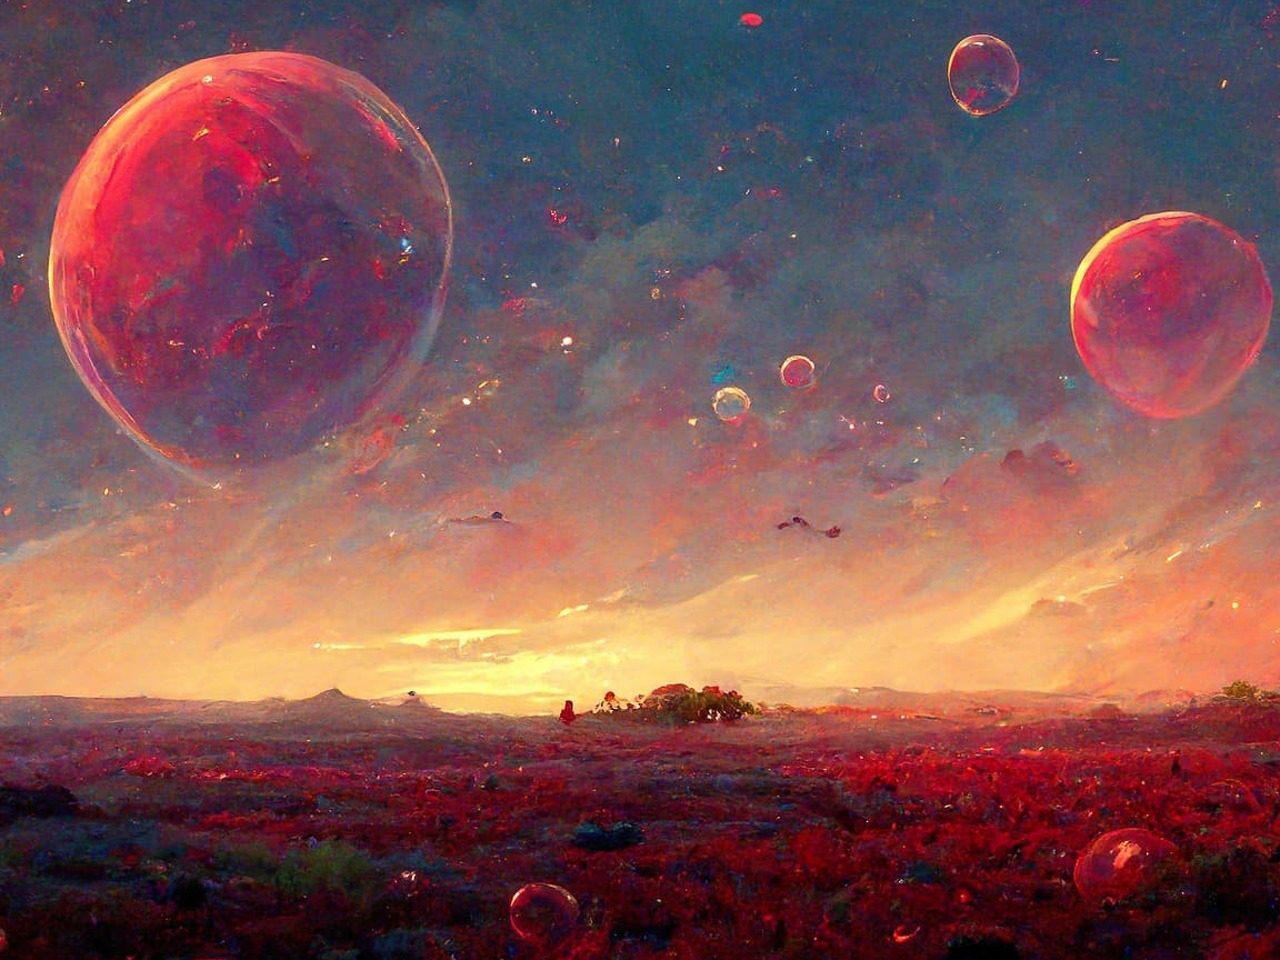 Paysage de monde fantastique avec bulles rouges